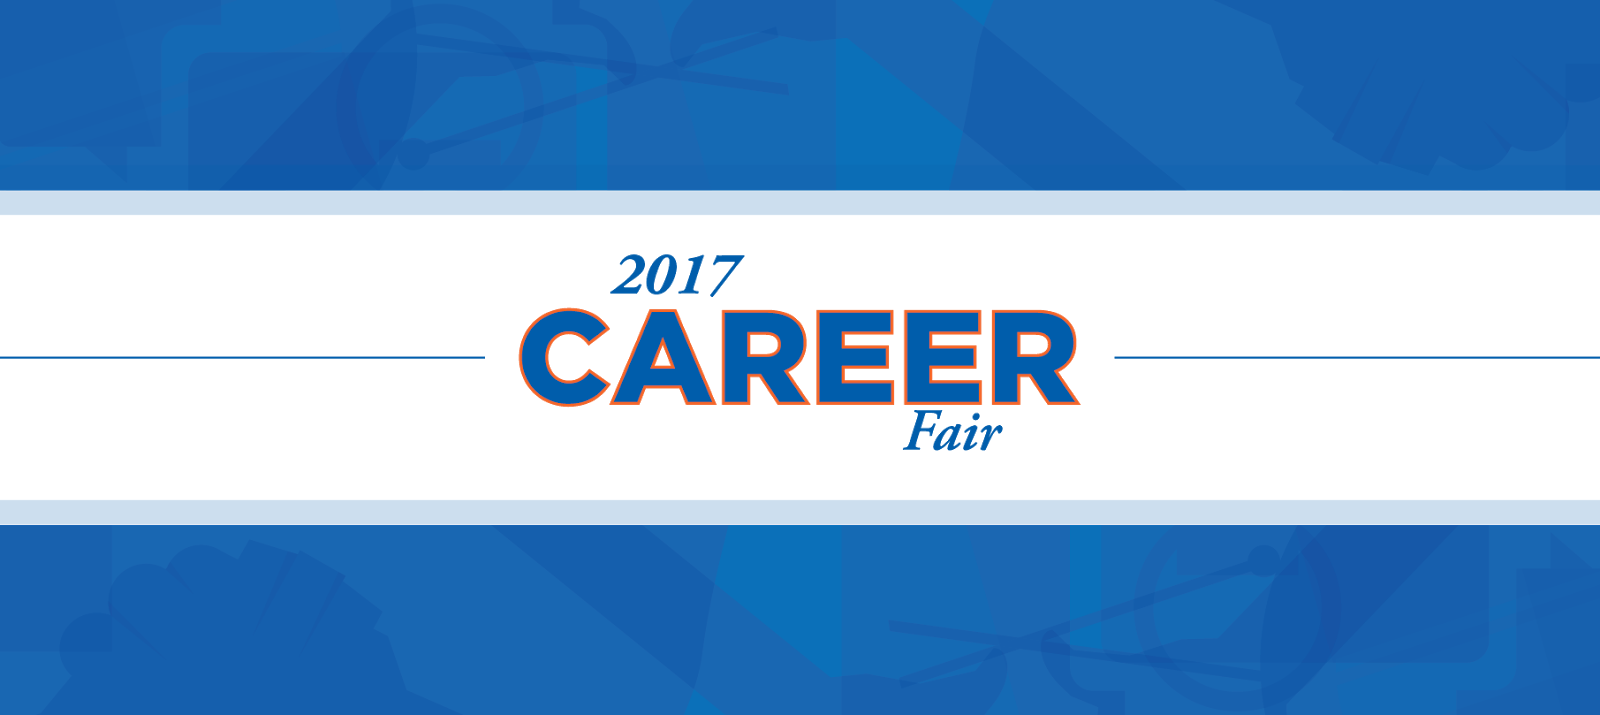 2017 Career Fair Logo - Alameda Health System (1600x715), Png Download